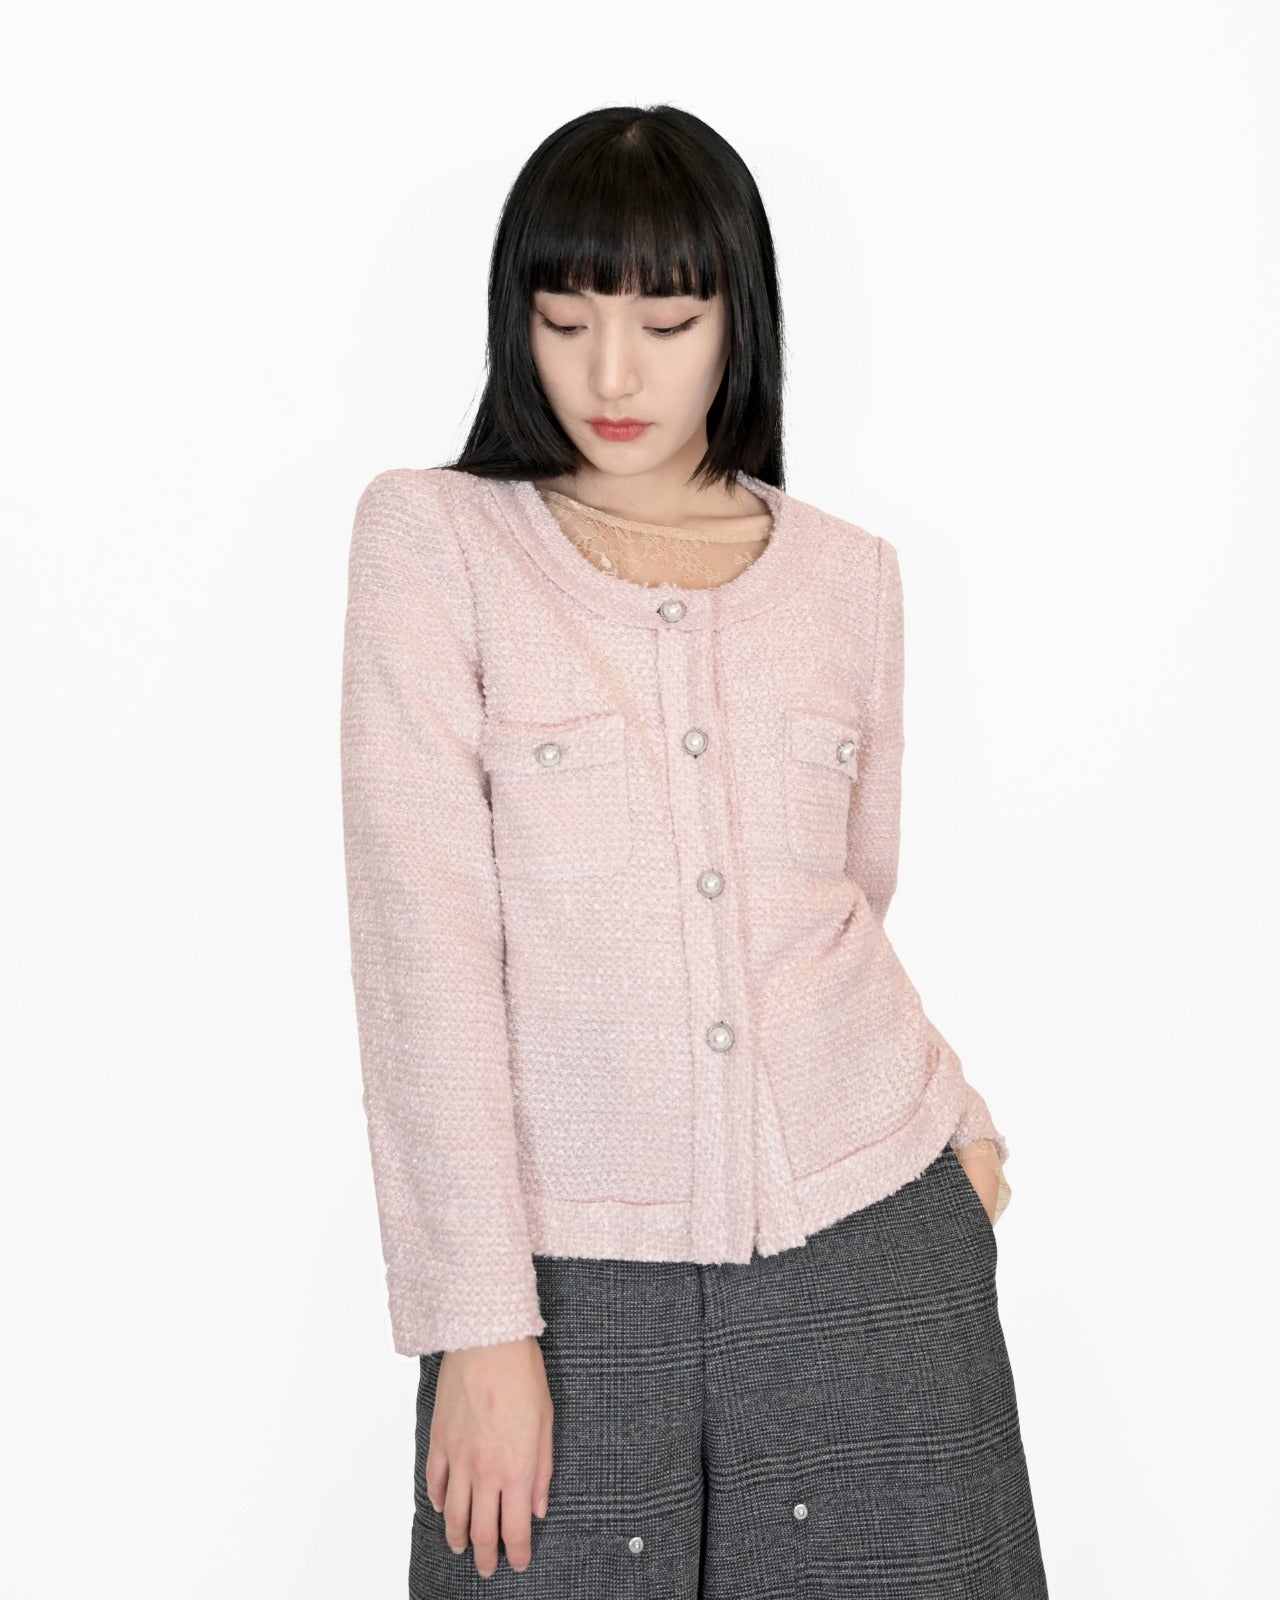 aalis YOONA tweed jacket (Pink)